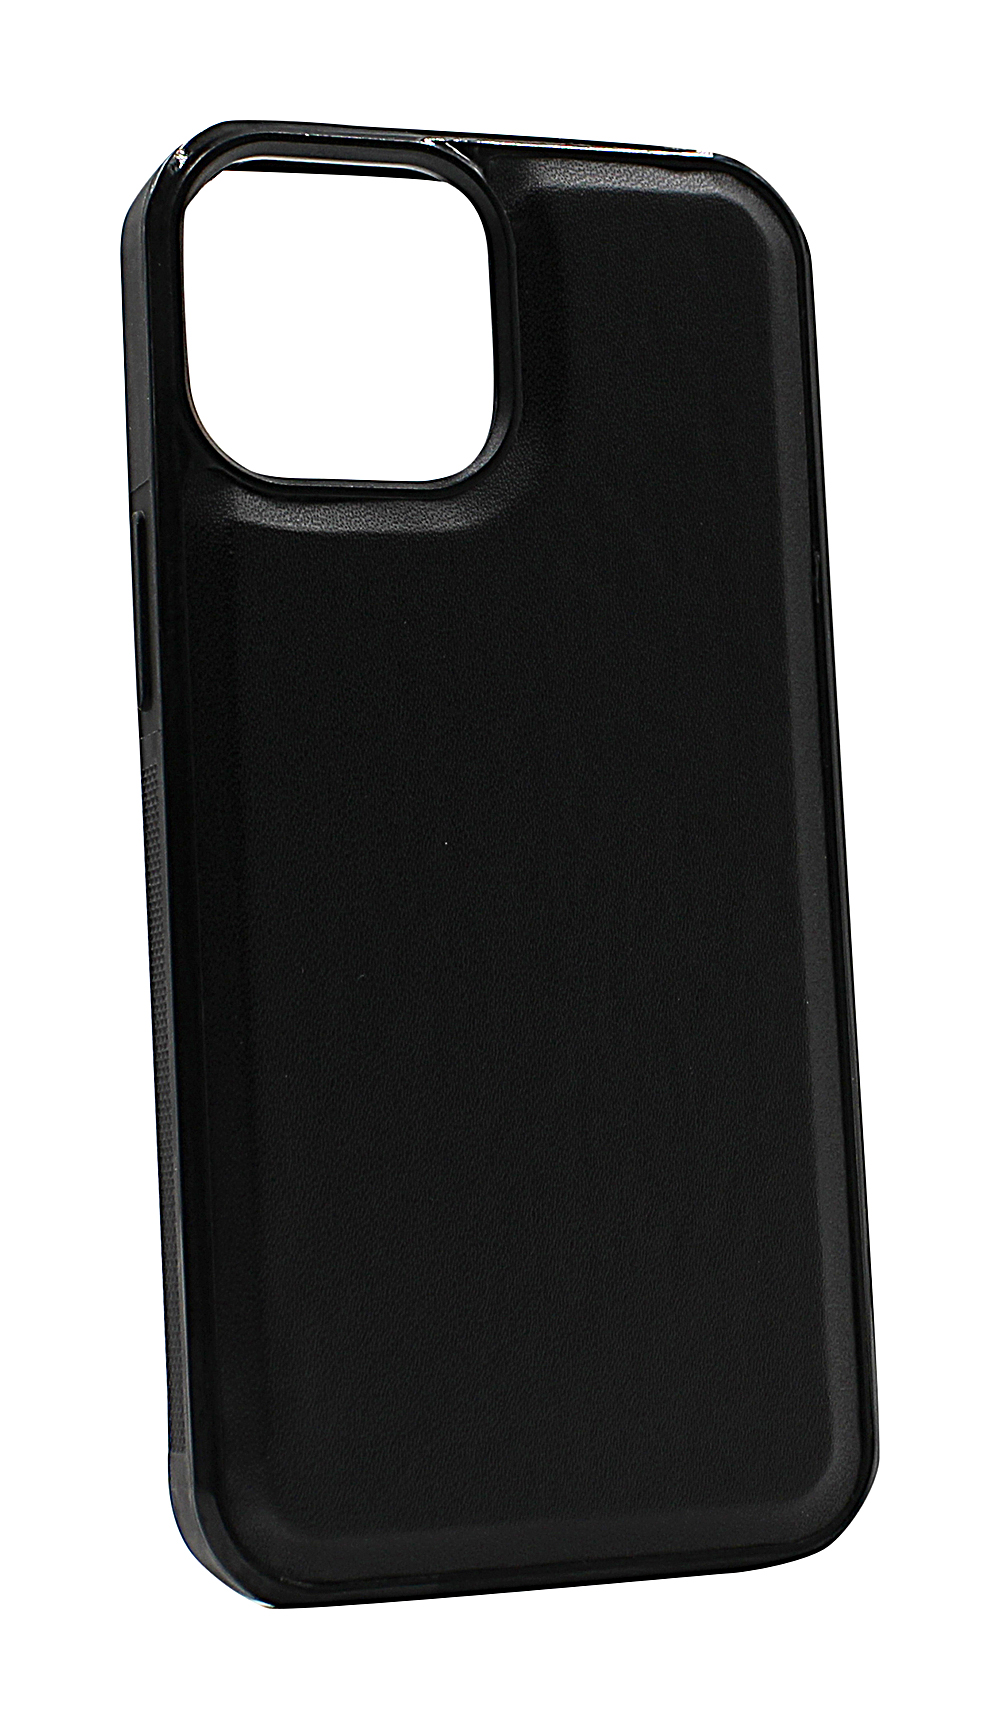 CoverInSkimblocker XL Magnet Fodral iPhone 13 Mini (5.4)